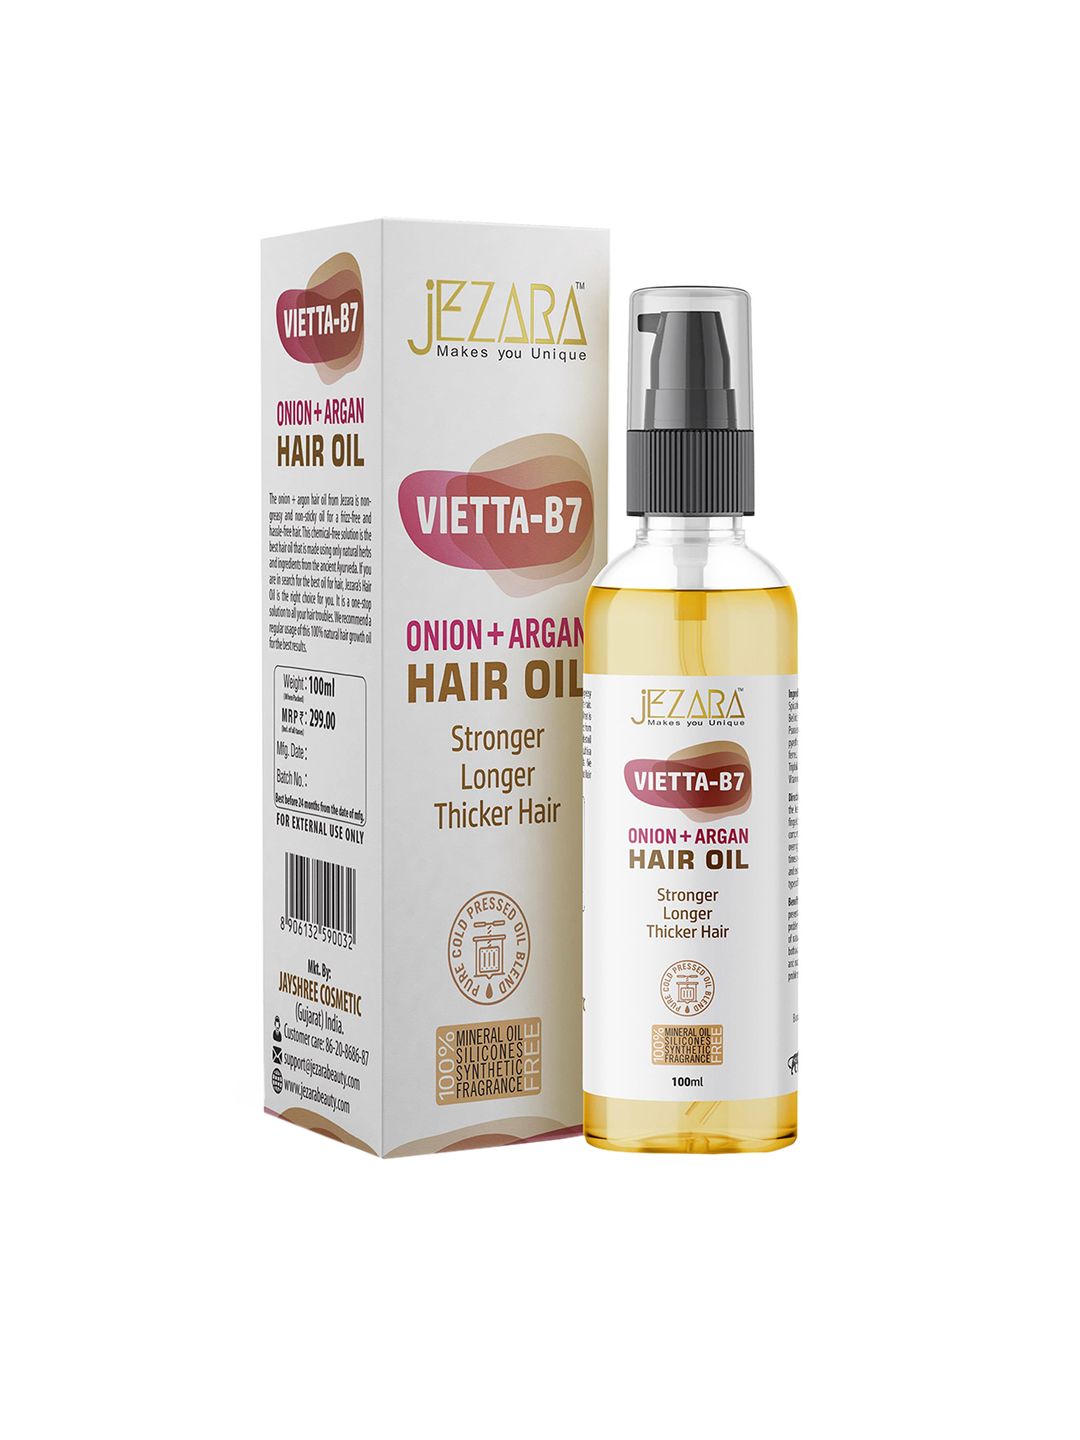 JEZARA Vietta-B7 Onion+ Argon Hair Oil 100ml Price in India